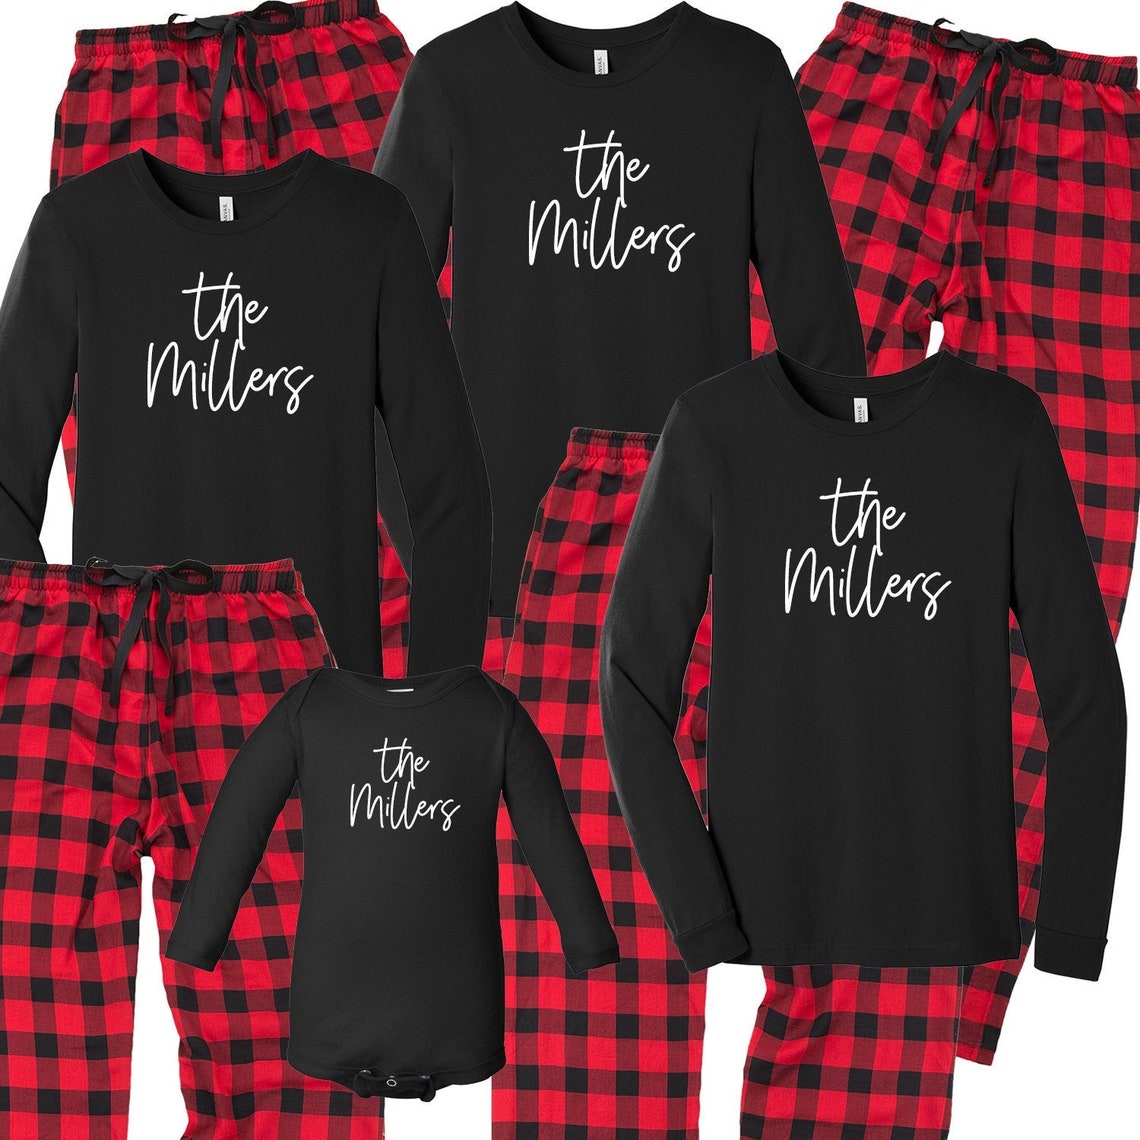 Personalized Plaid Christmas Tree Pajama Set – Cotton Sisters